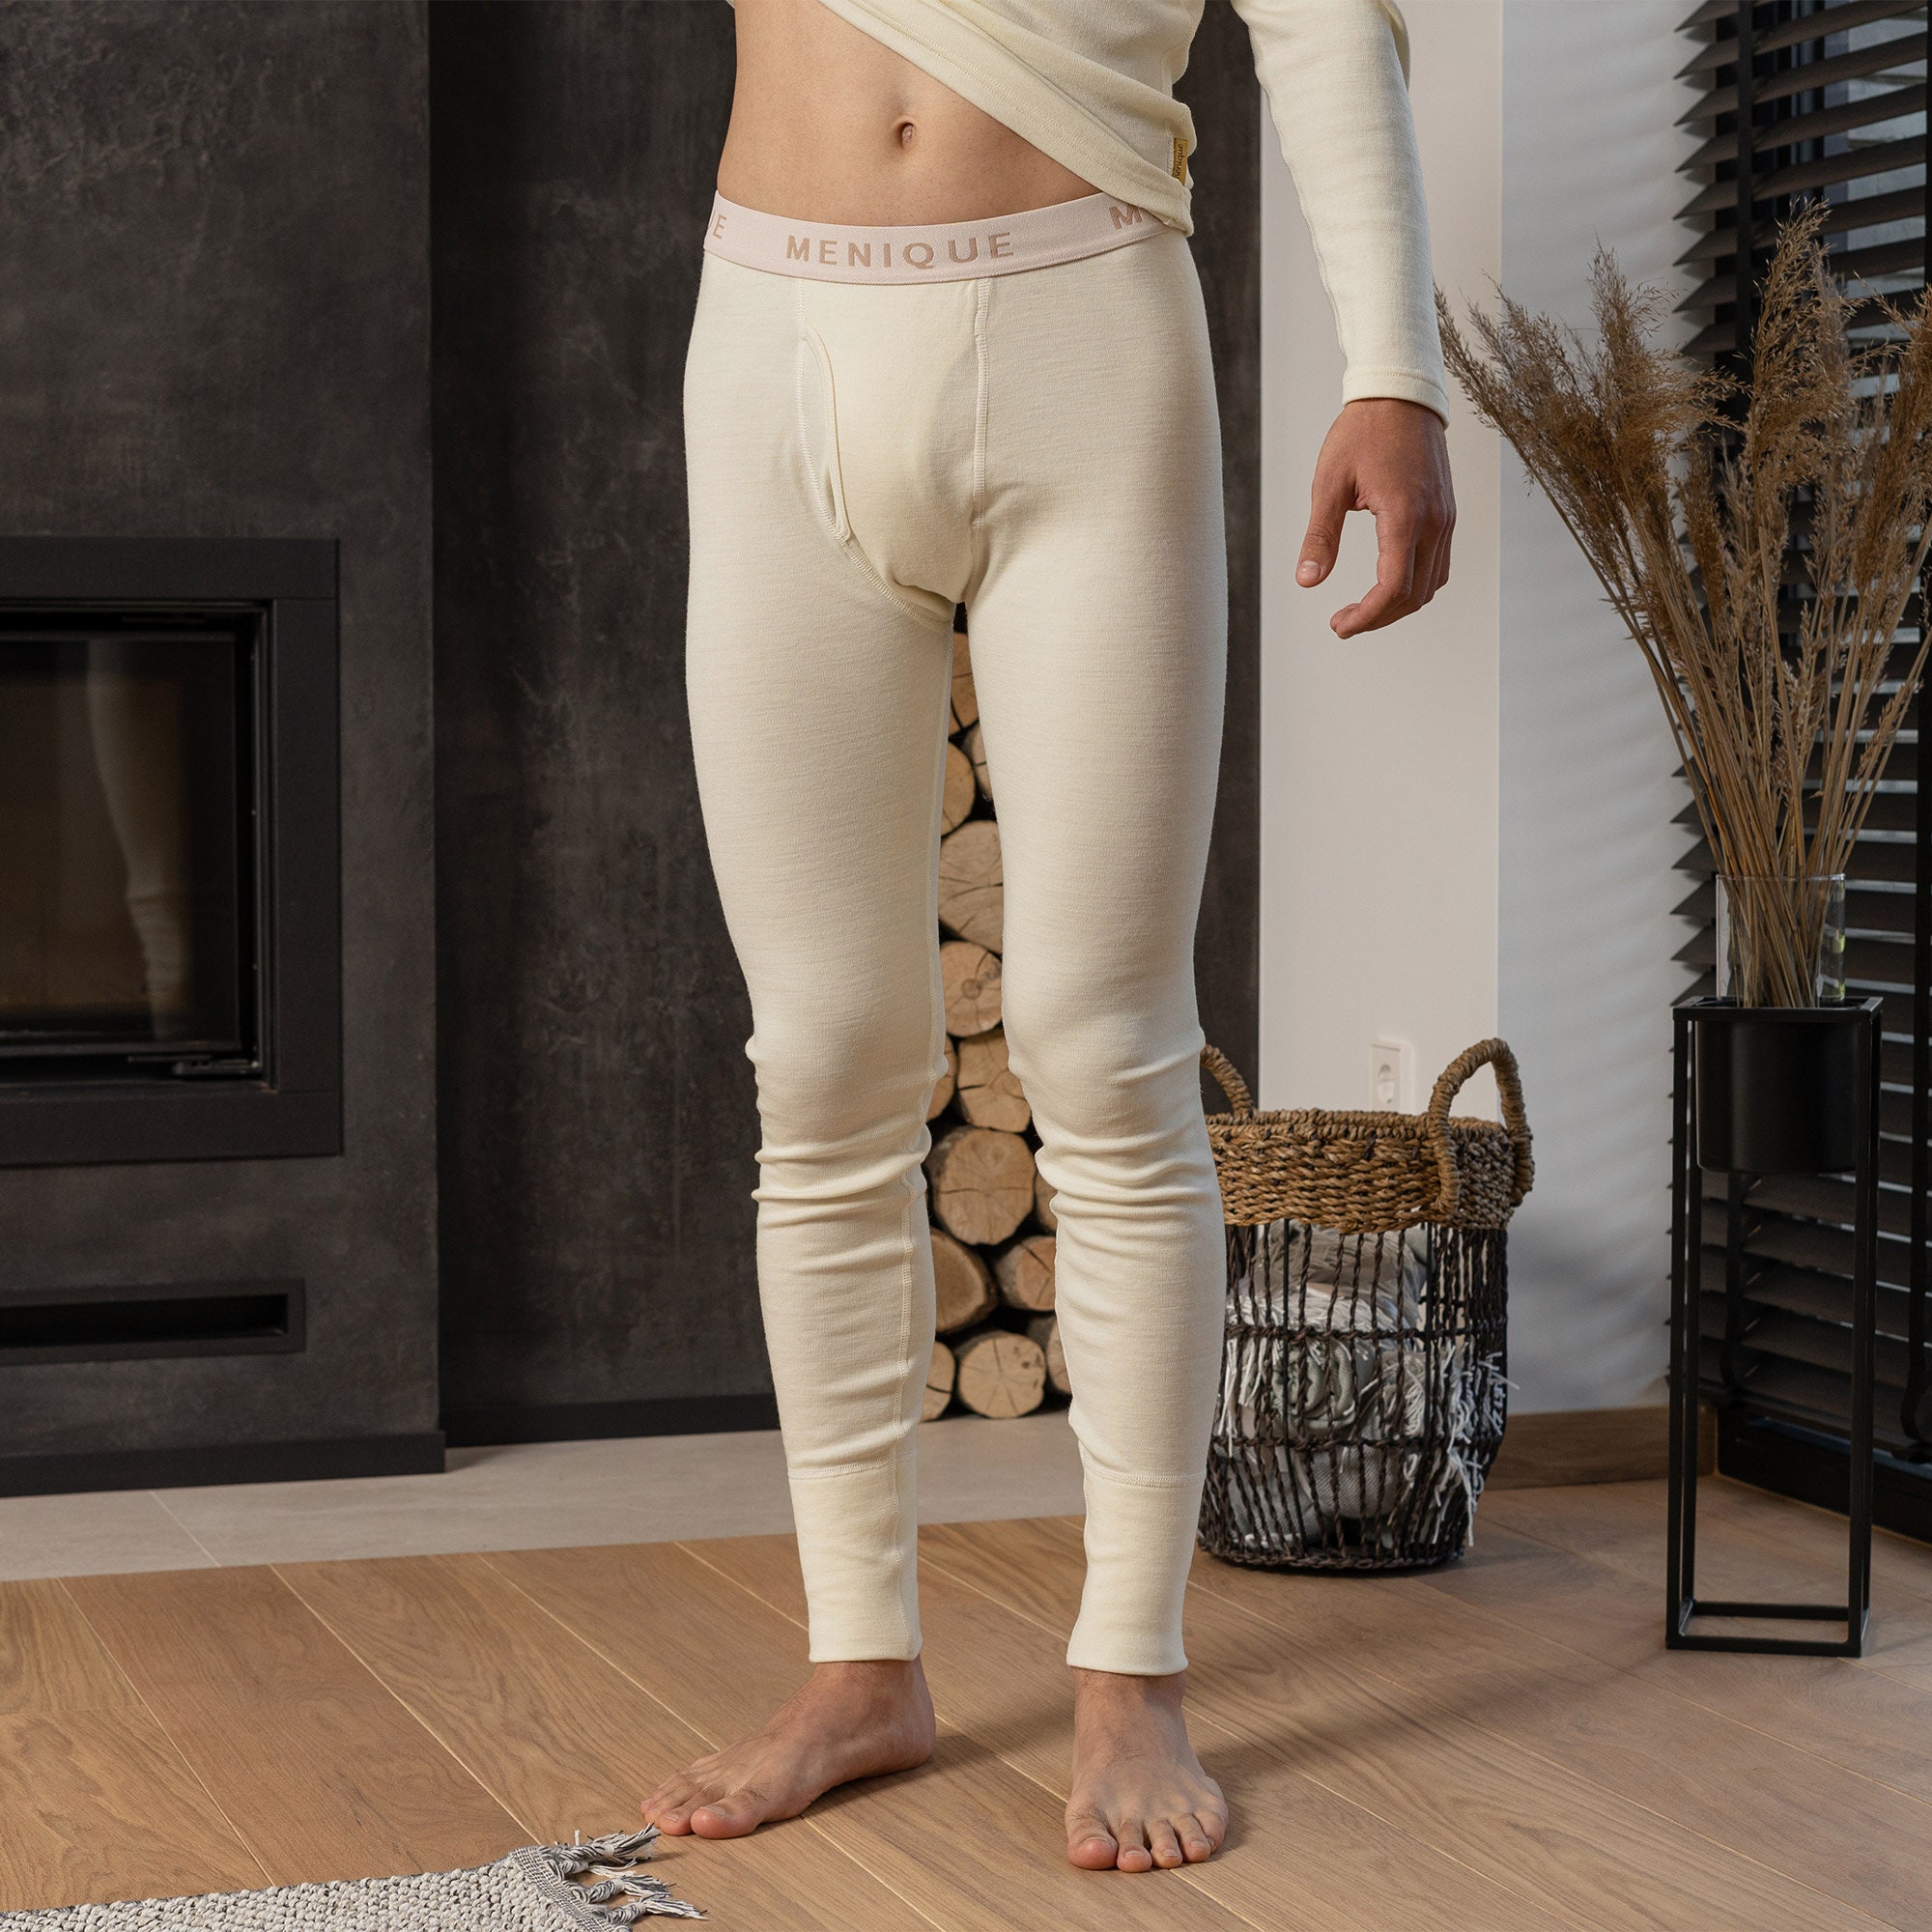 Merino Wool Leggings for Women Breathable Workout Leggings Yoga